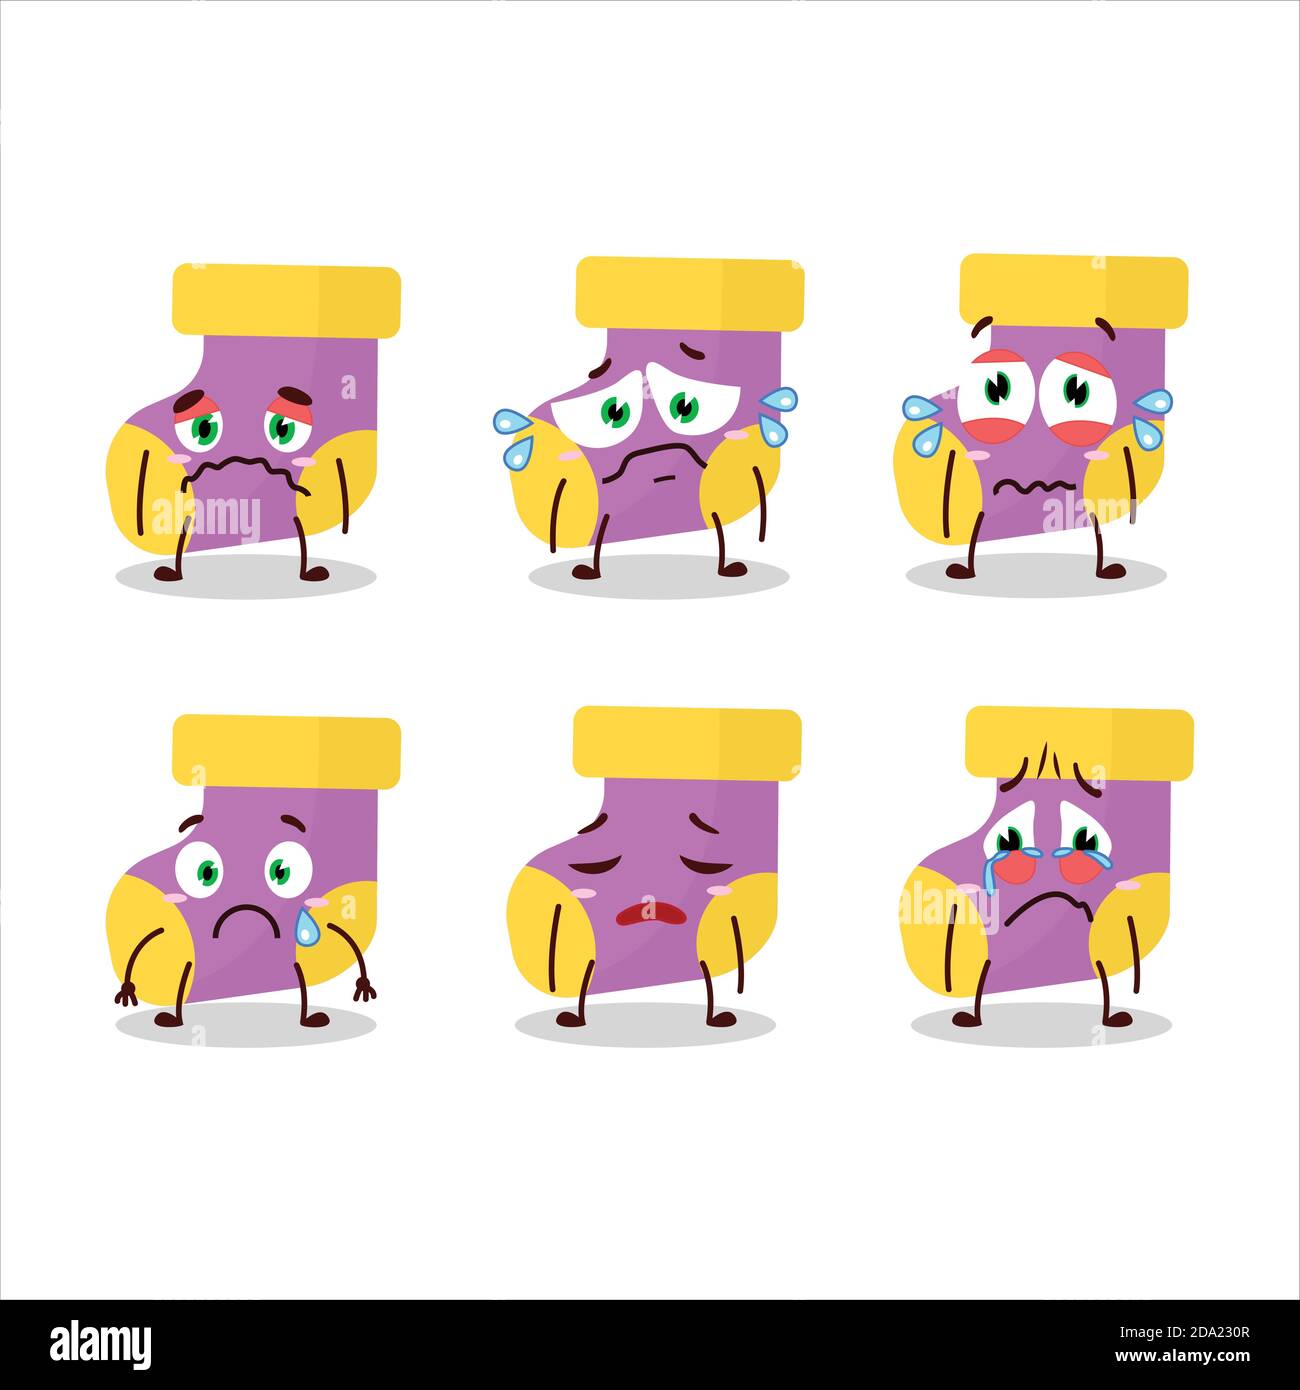 Bébé chaussettes violet personnage de dessin animé avec expression triste  Image Vectorielle Stock - Alamy